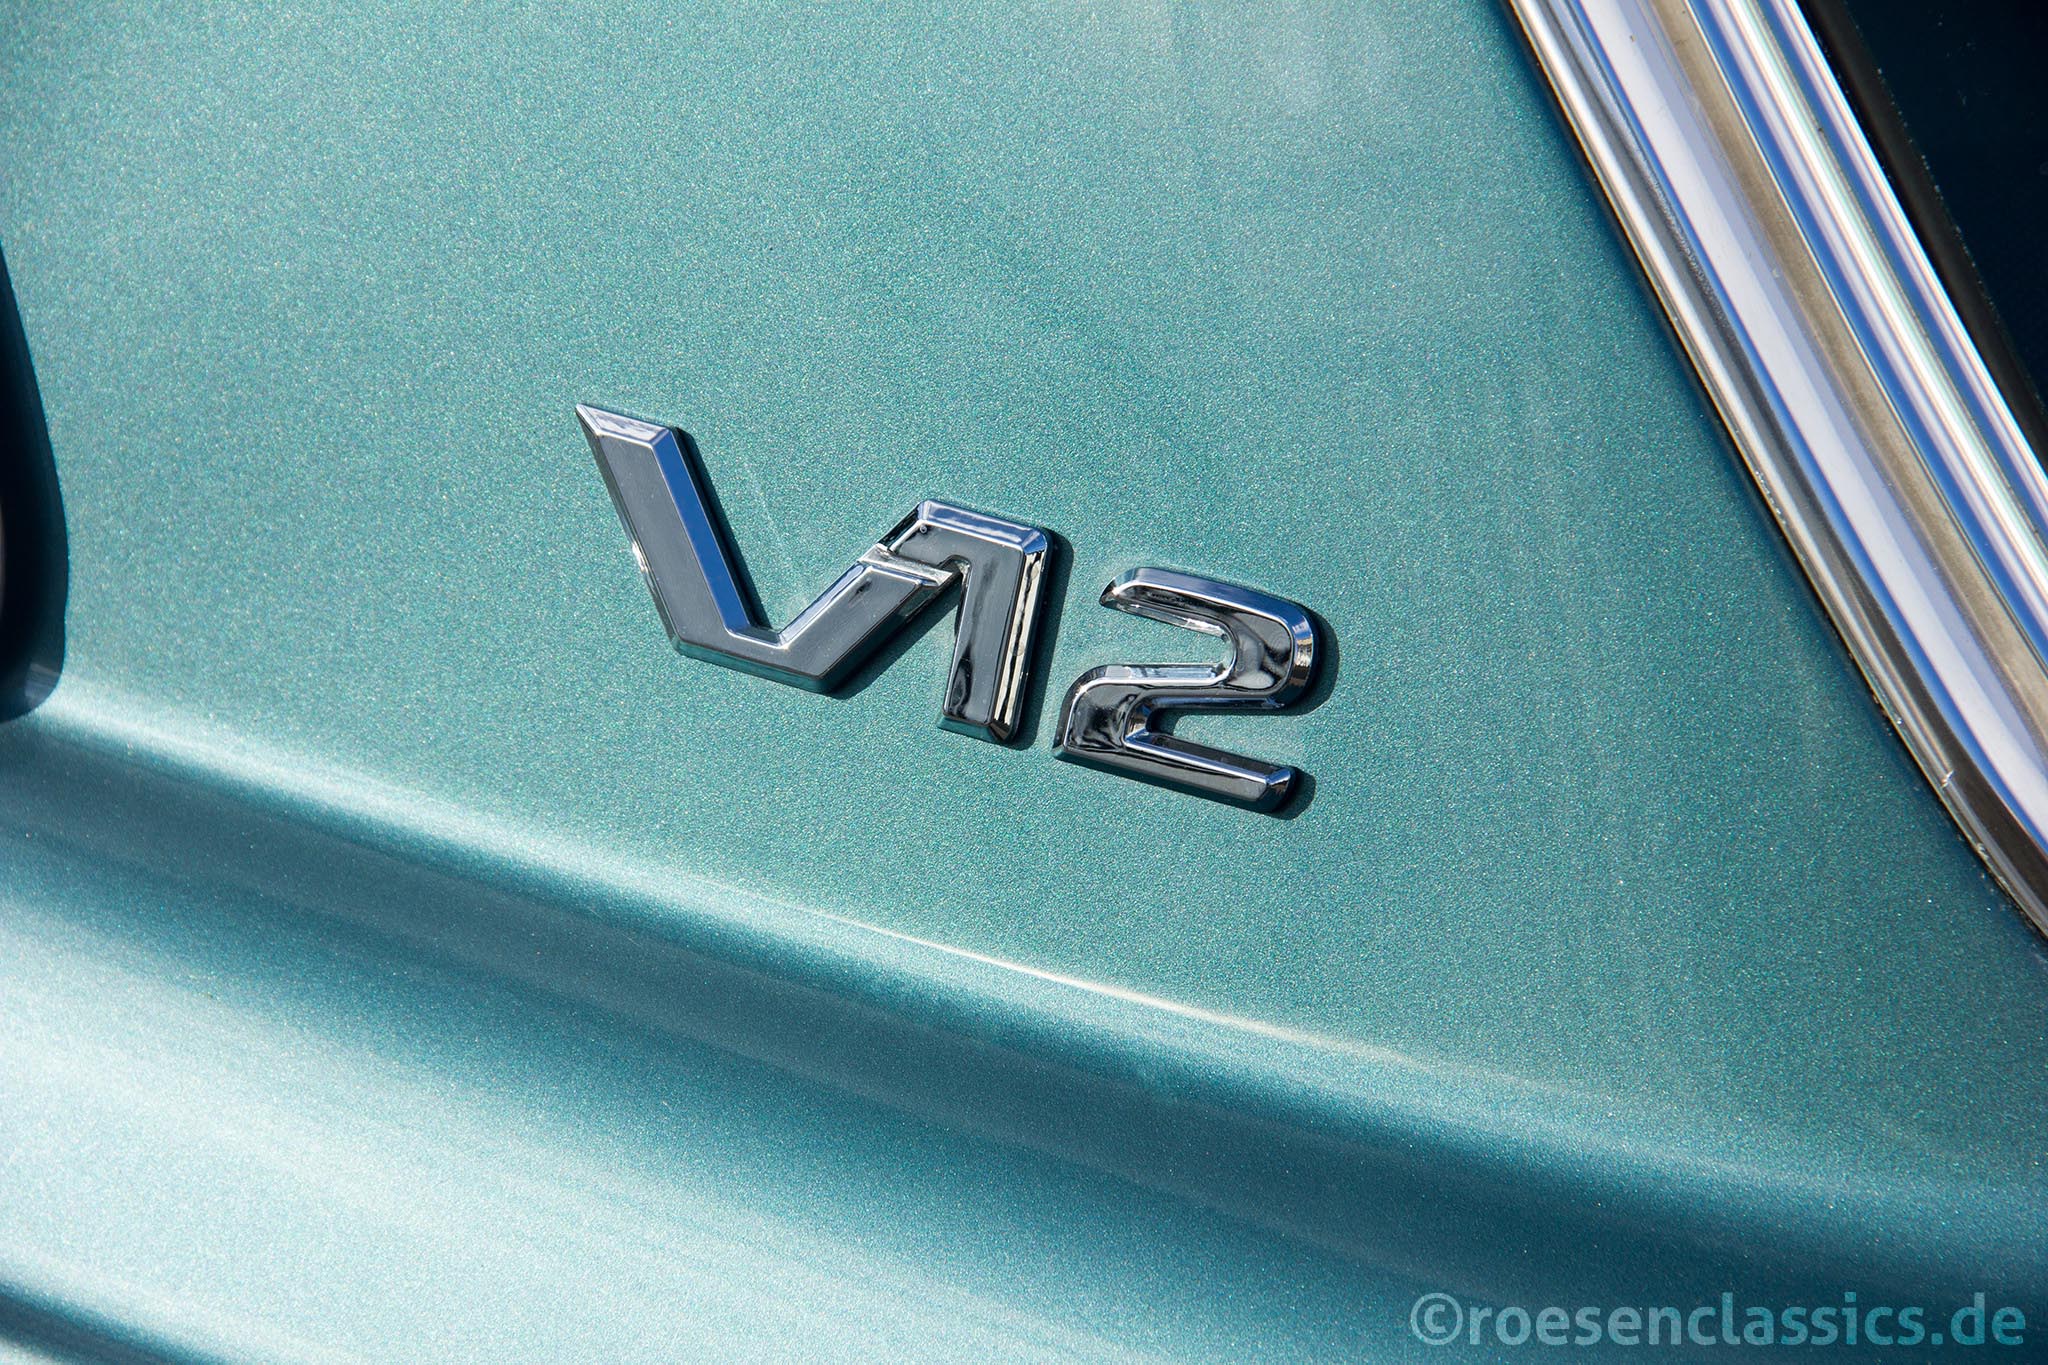 Insigne des W116 Tunings - Das V12 Emblem auf der C-Säule